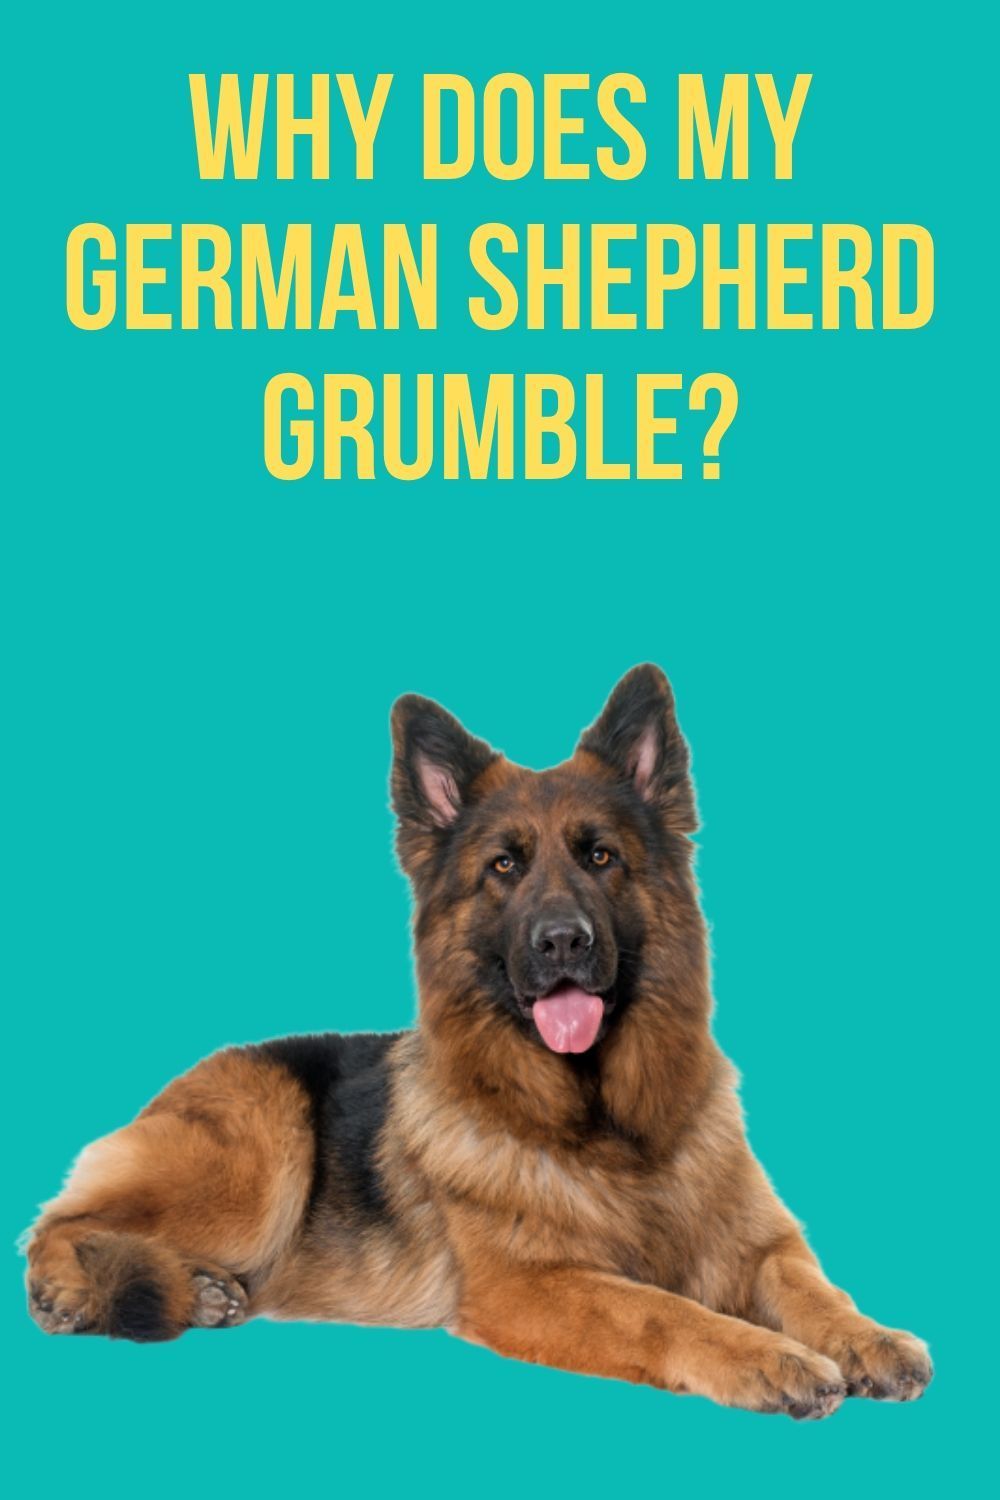 Why does my German Shepherd grumble?